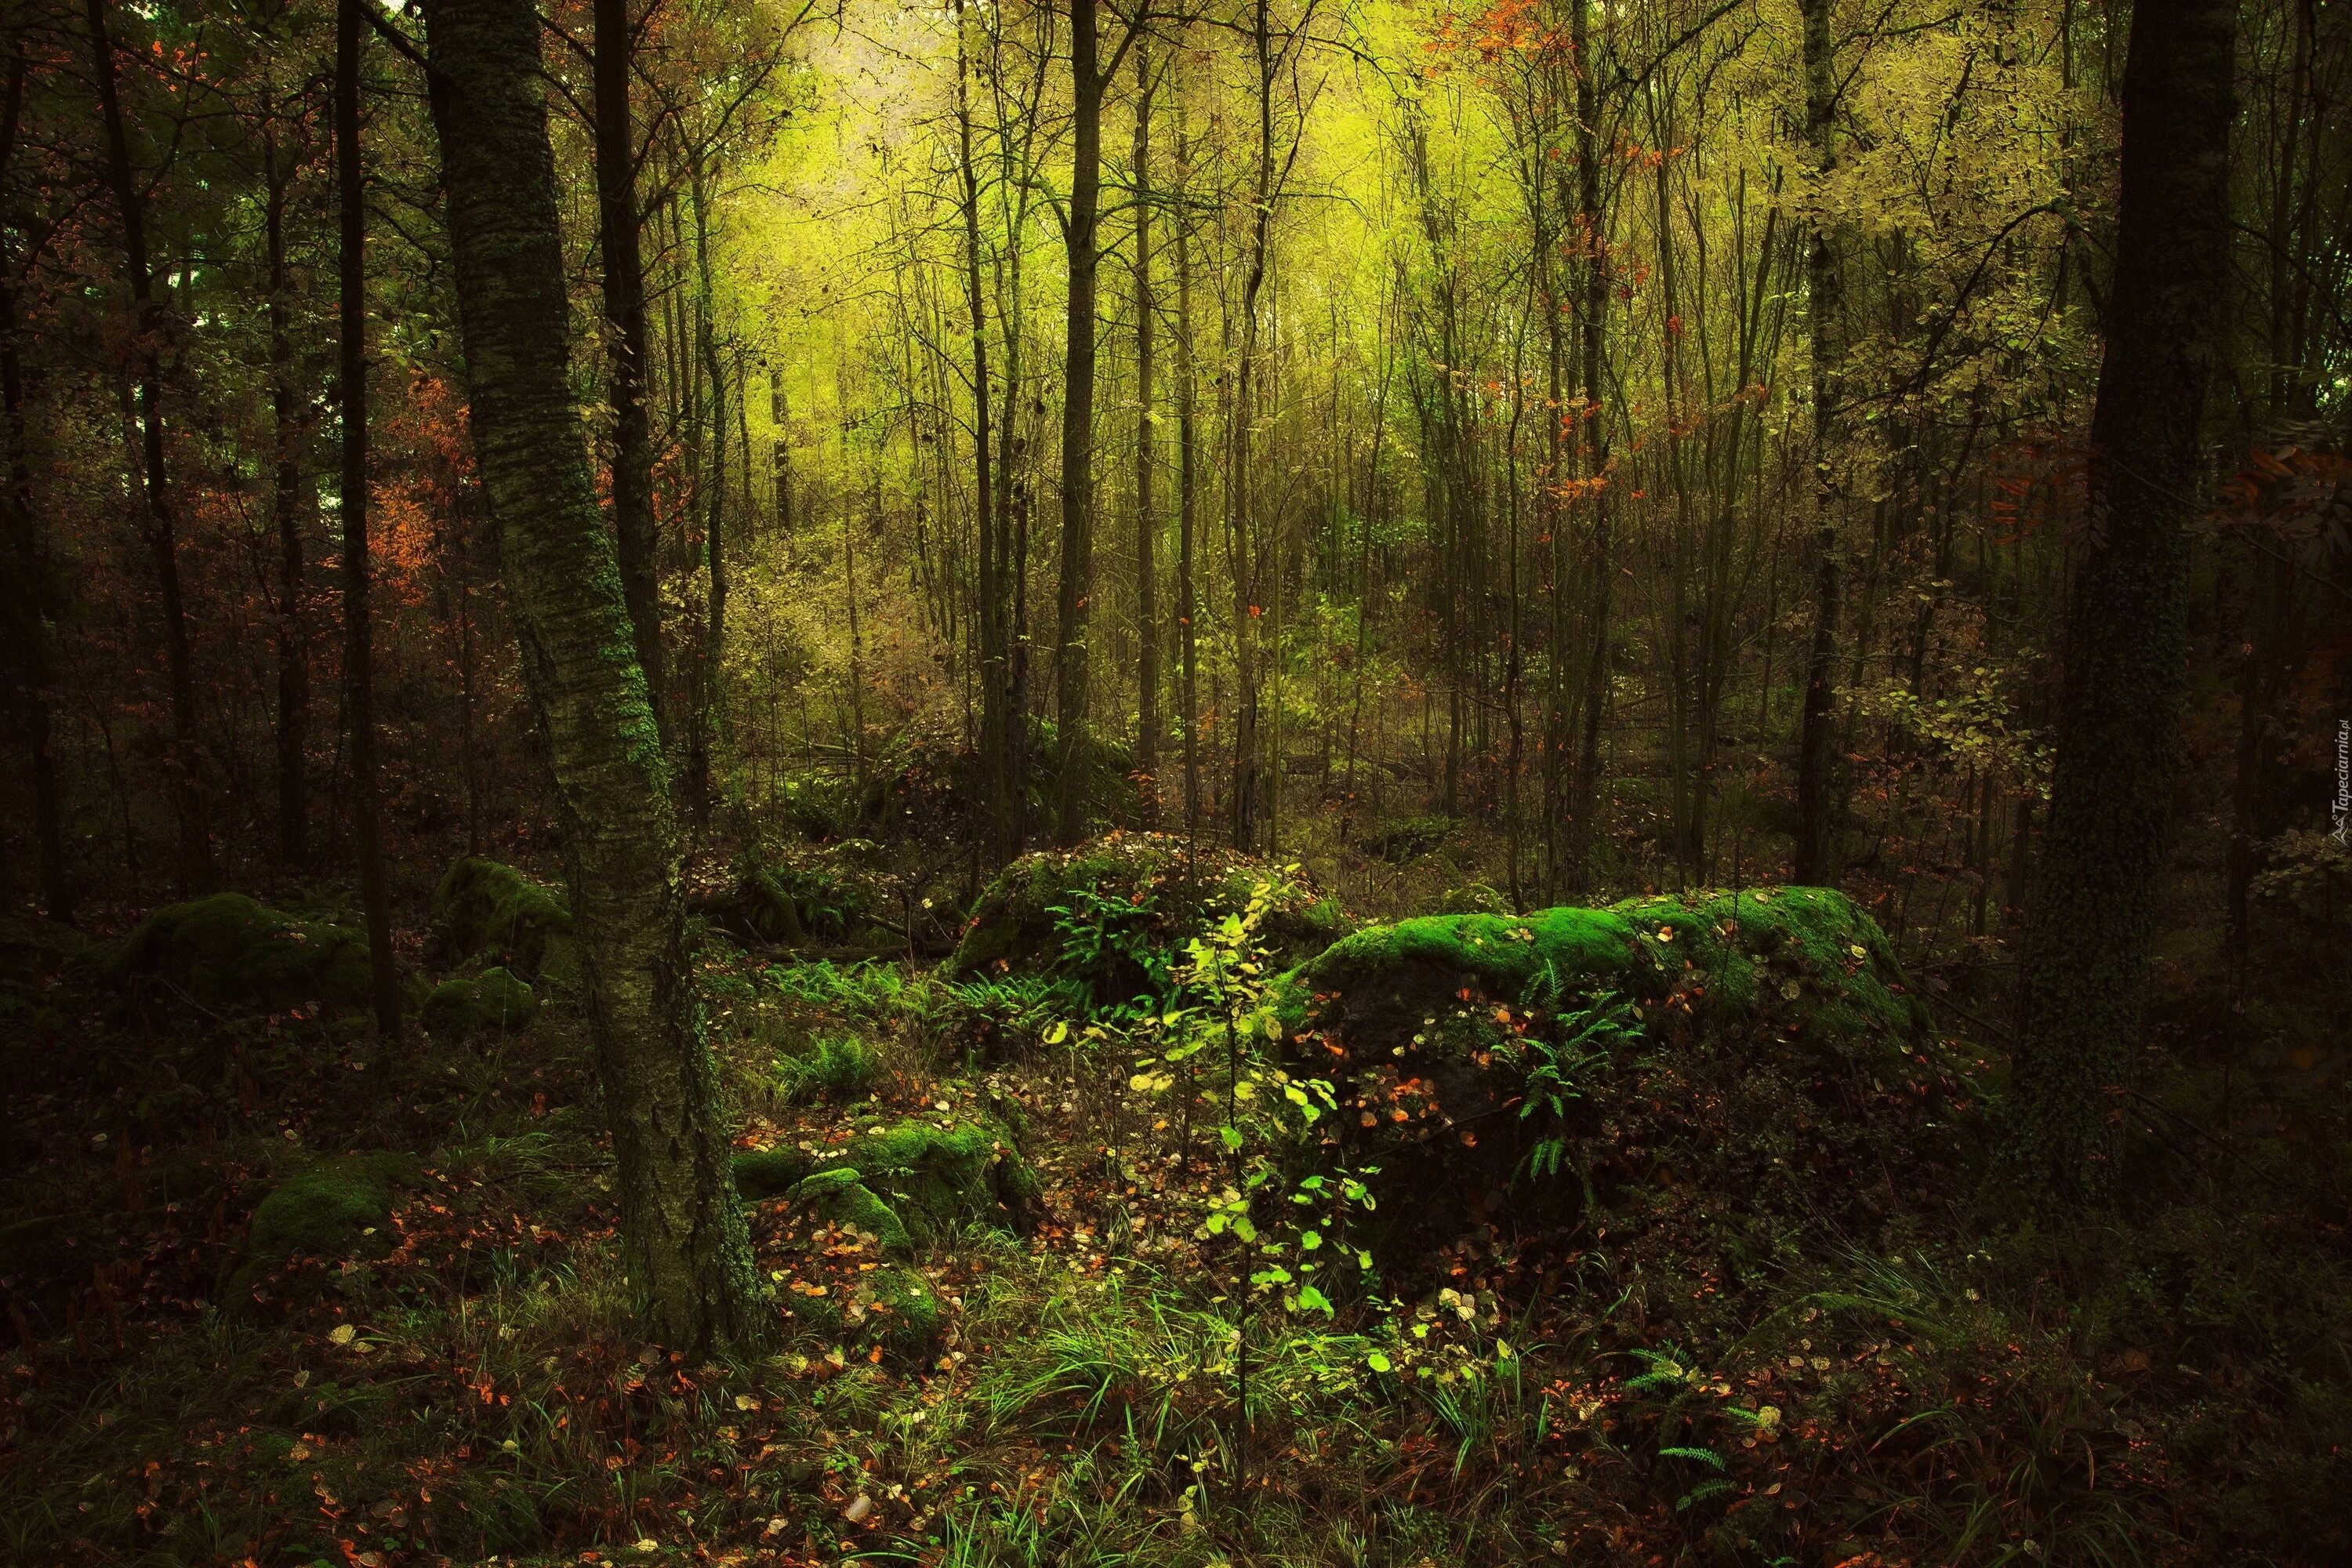 Чаща леса. Дремучий лес. Мистические леса. Лесные заросли. Заросли чащи